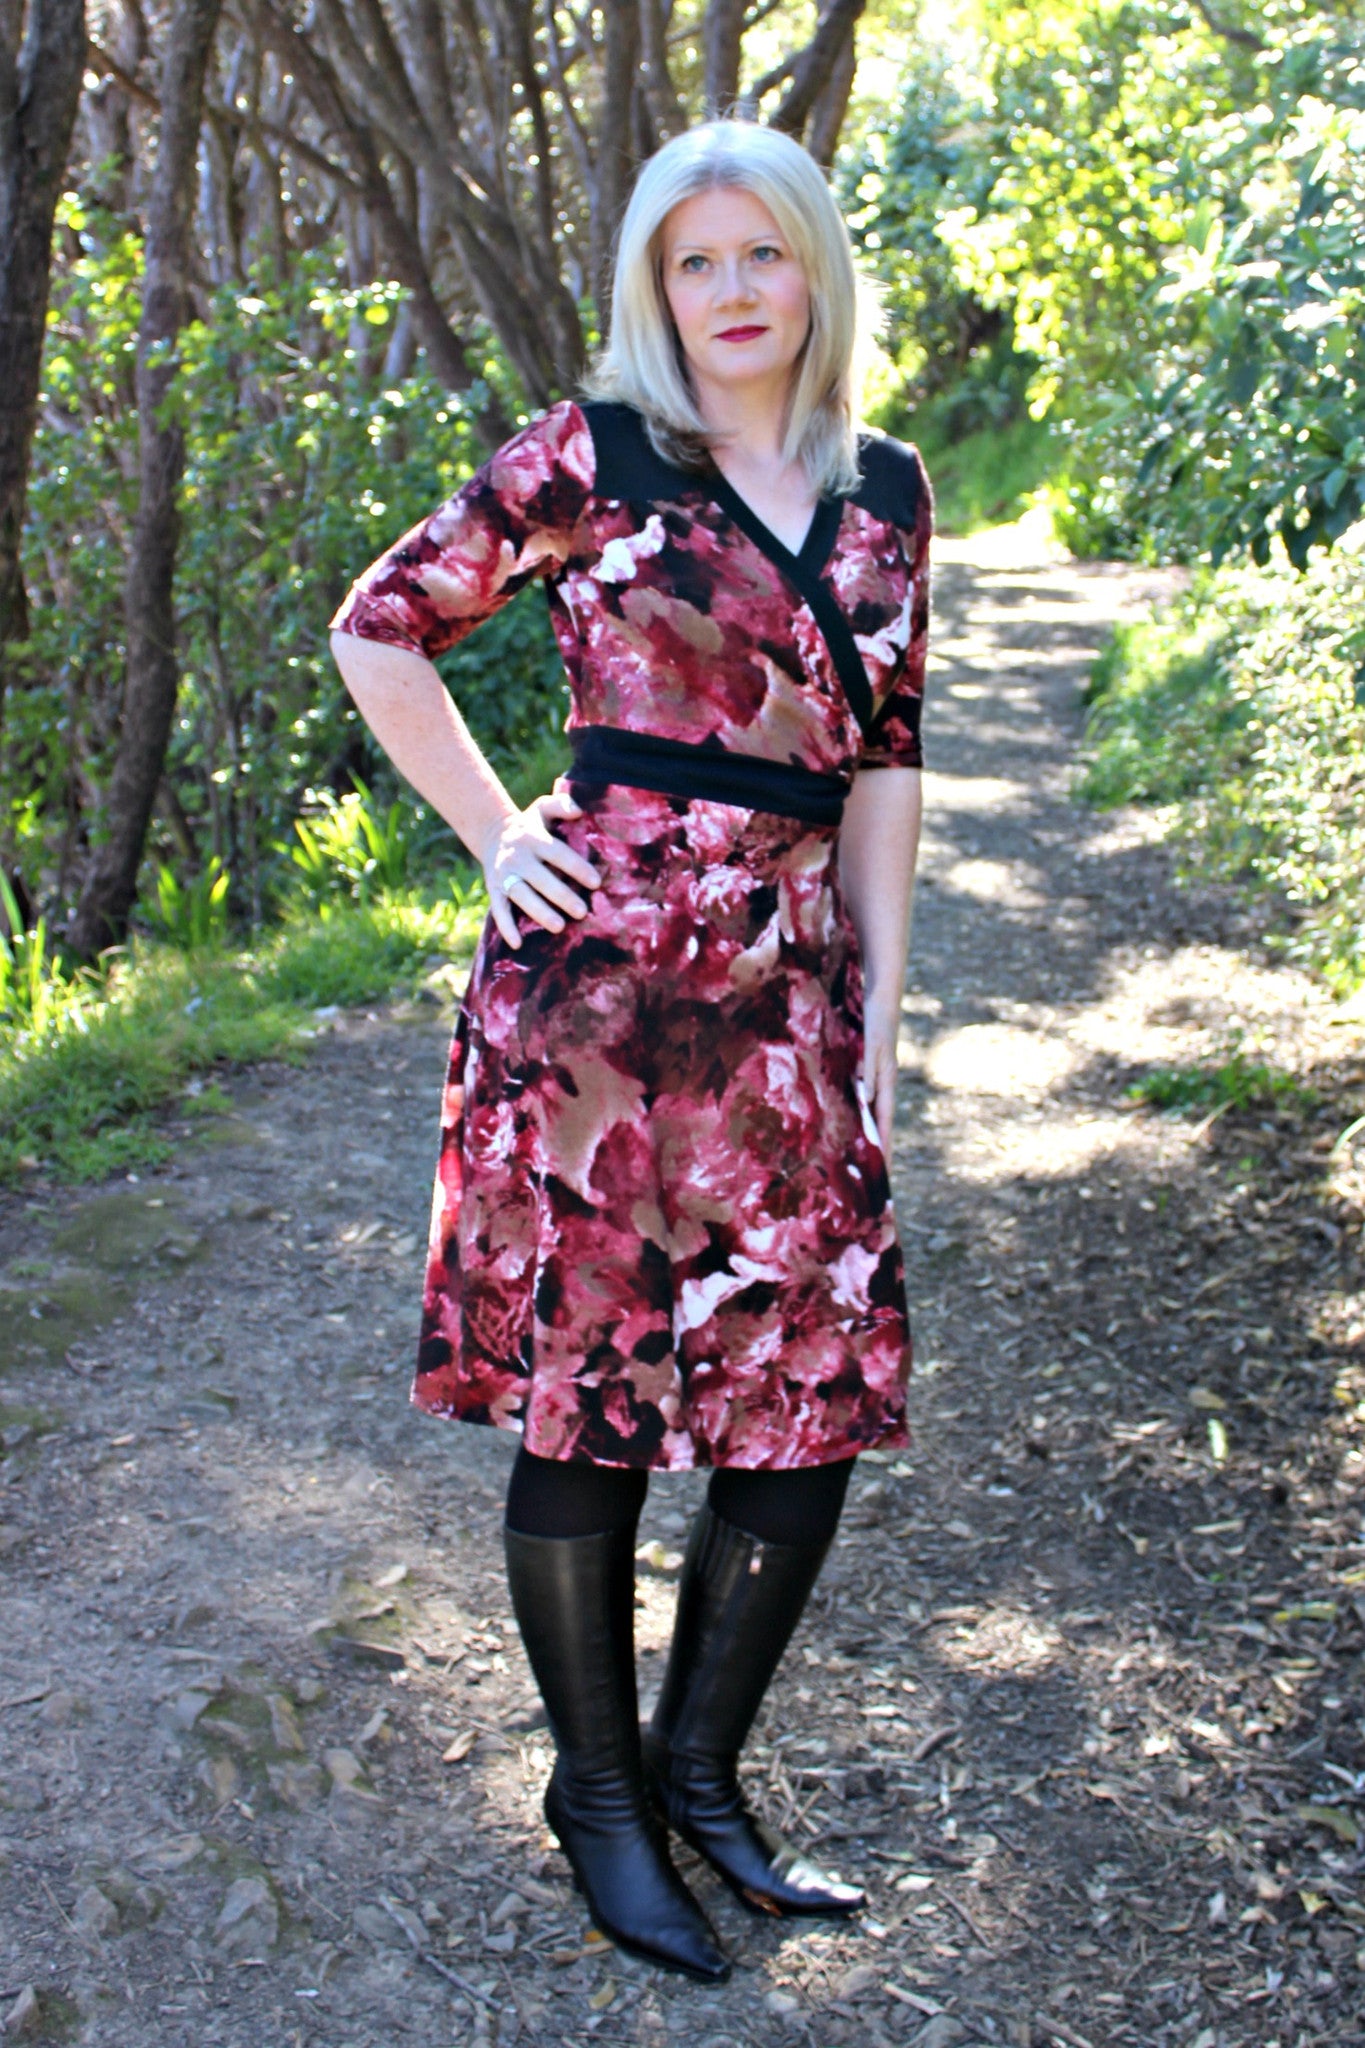 Gillian Dress - dress variation, front